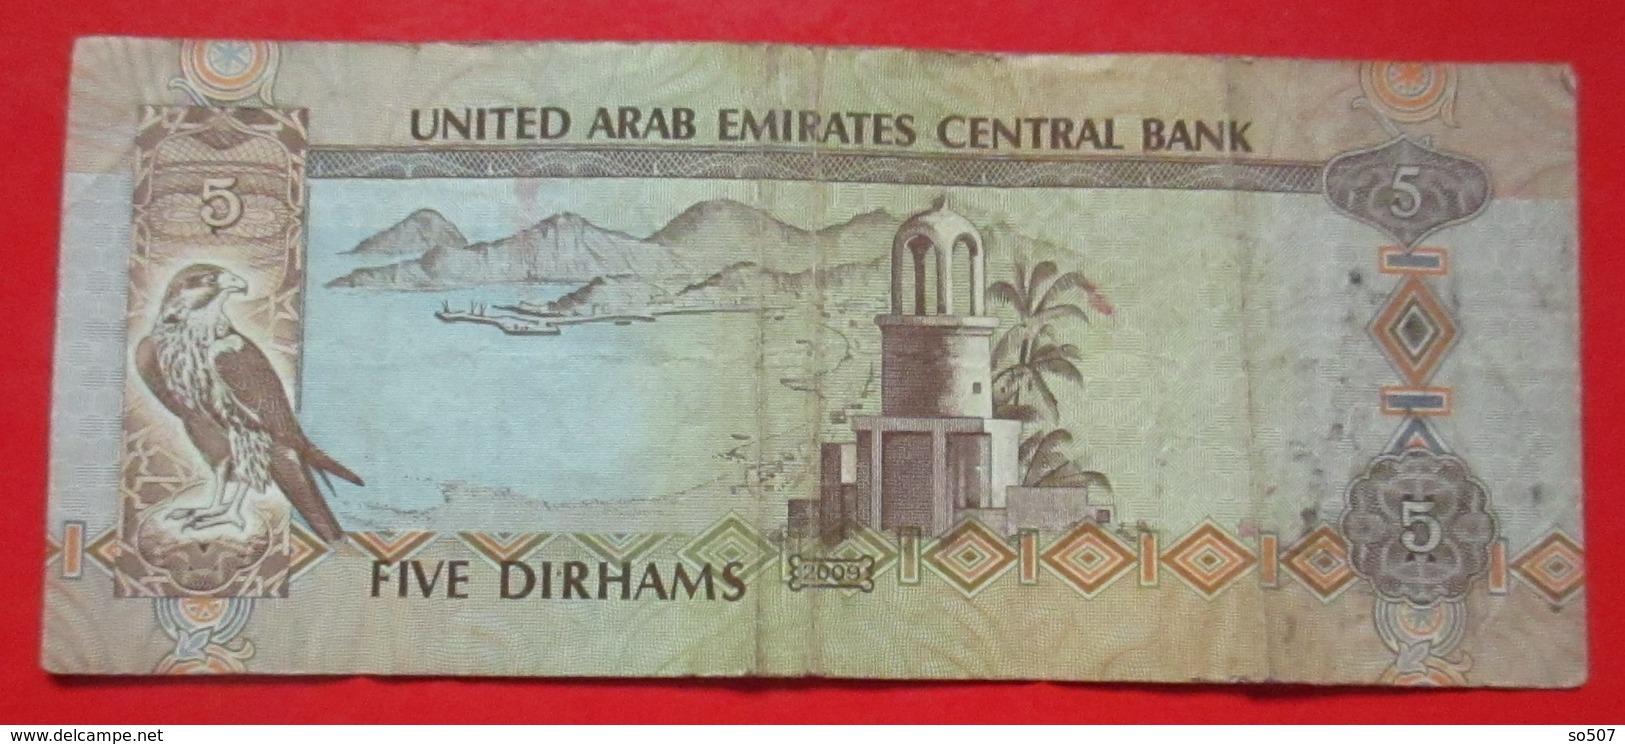 X1- 5 Dirhams 2009. United Arab Emirates- Five Dirhams, Circulated Banknote - Ver. Arab. Emirate